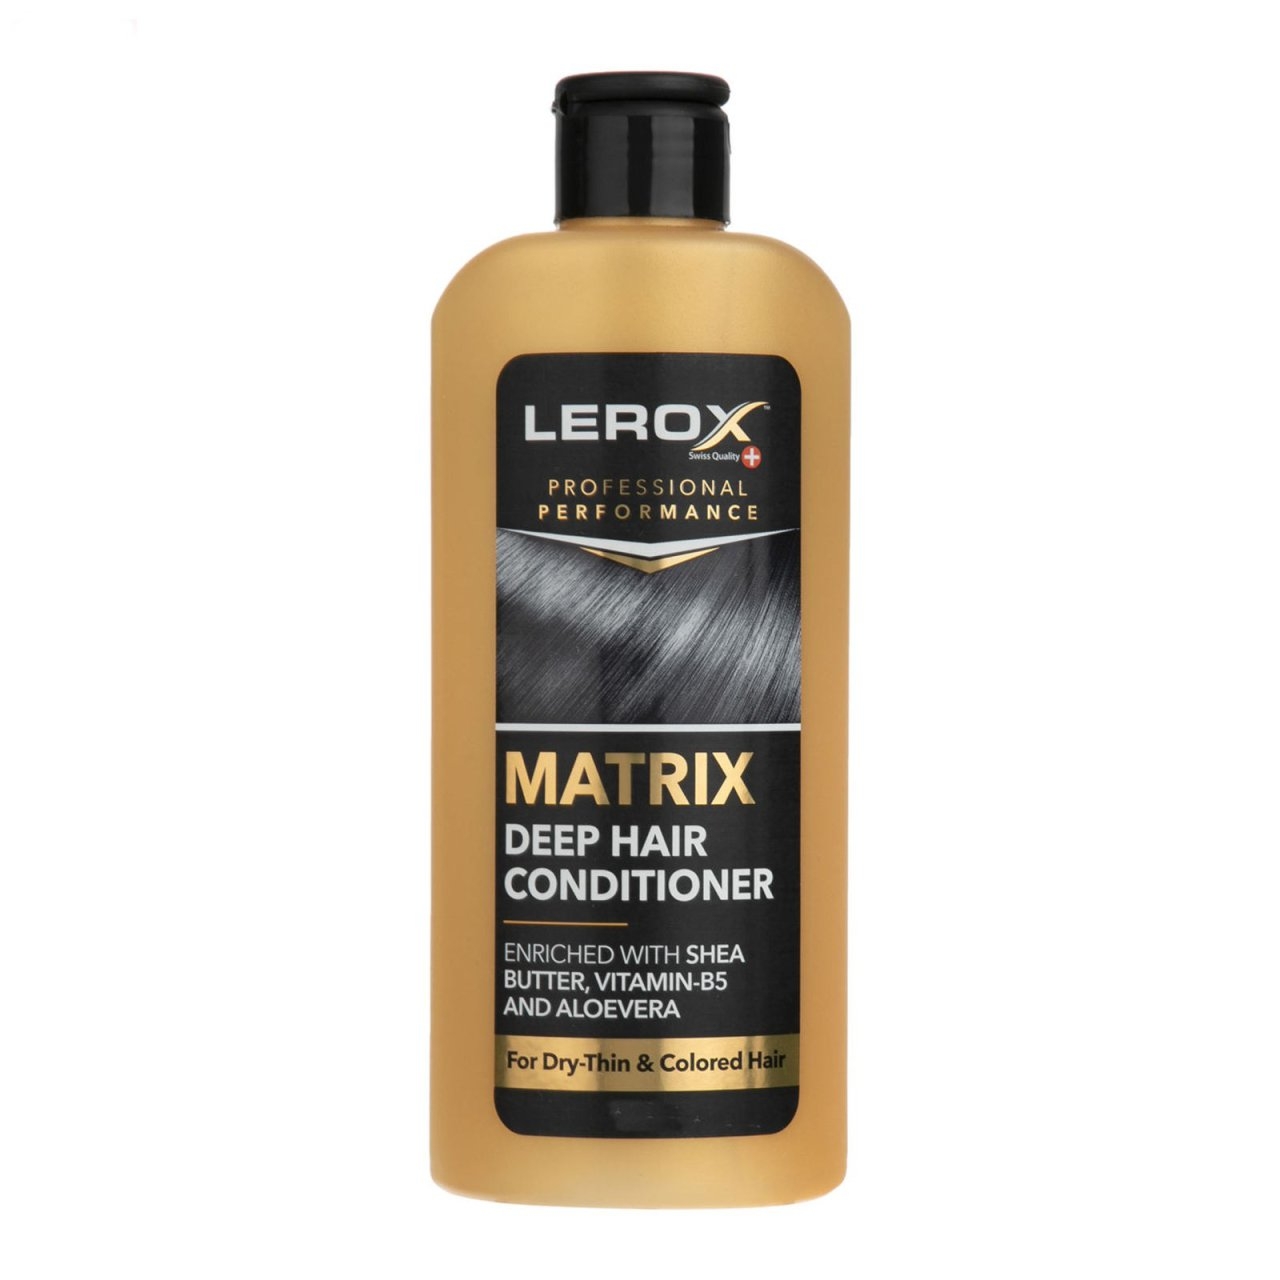 نرم کننده مو لروکس مدل MATRIX وزن ۵۵۰ گرم